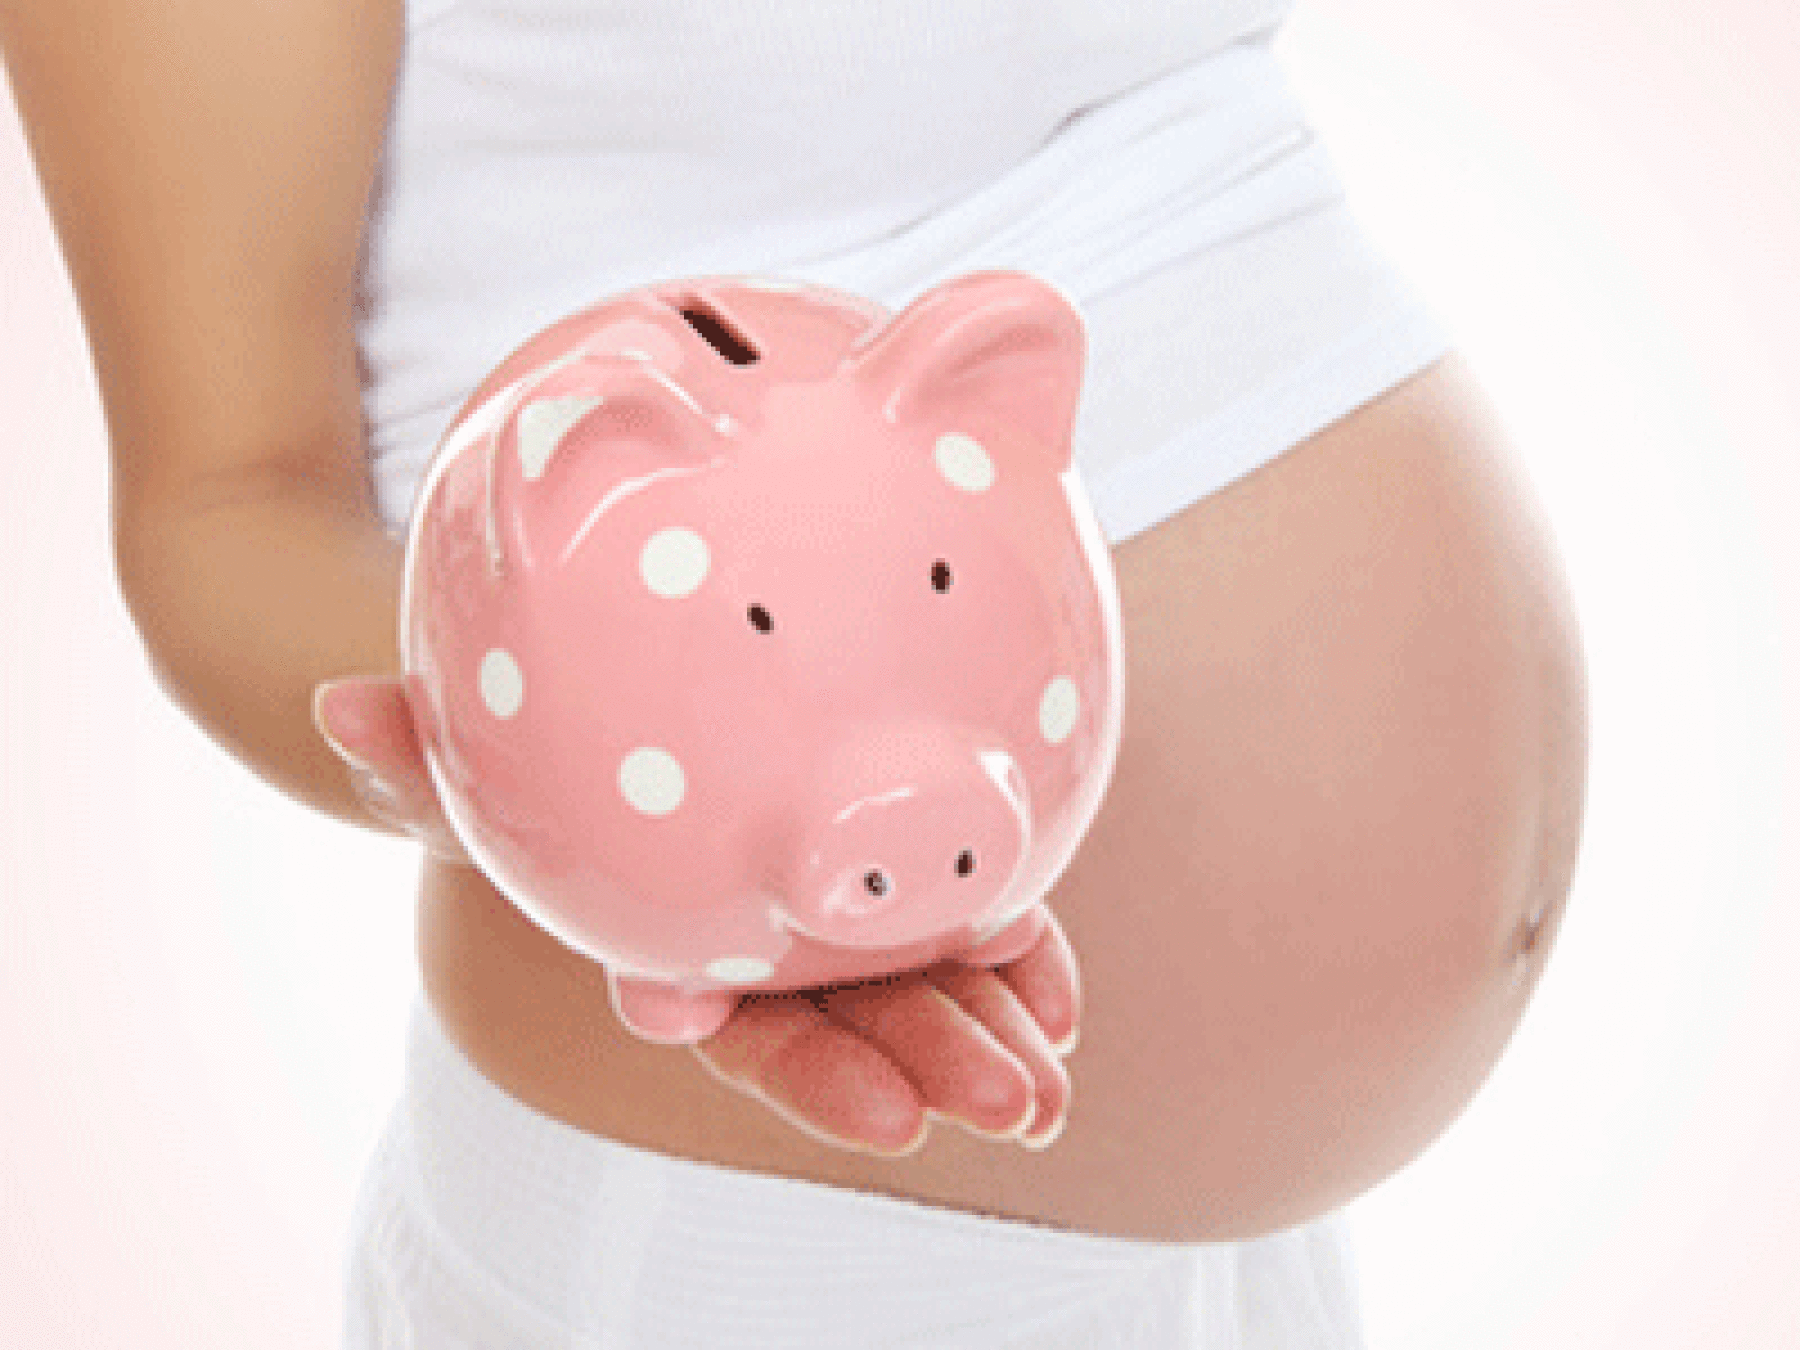 Congé maternité : quelles indemnités ?